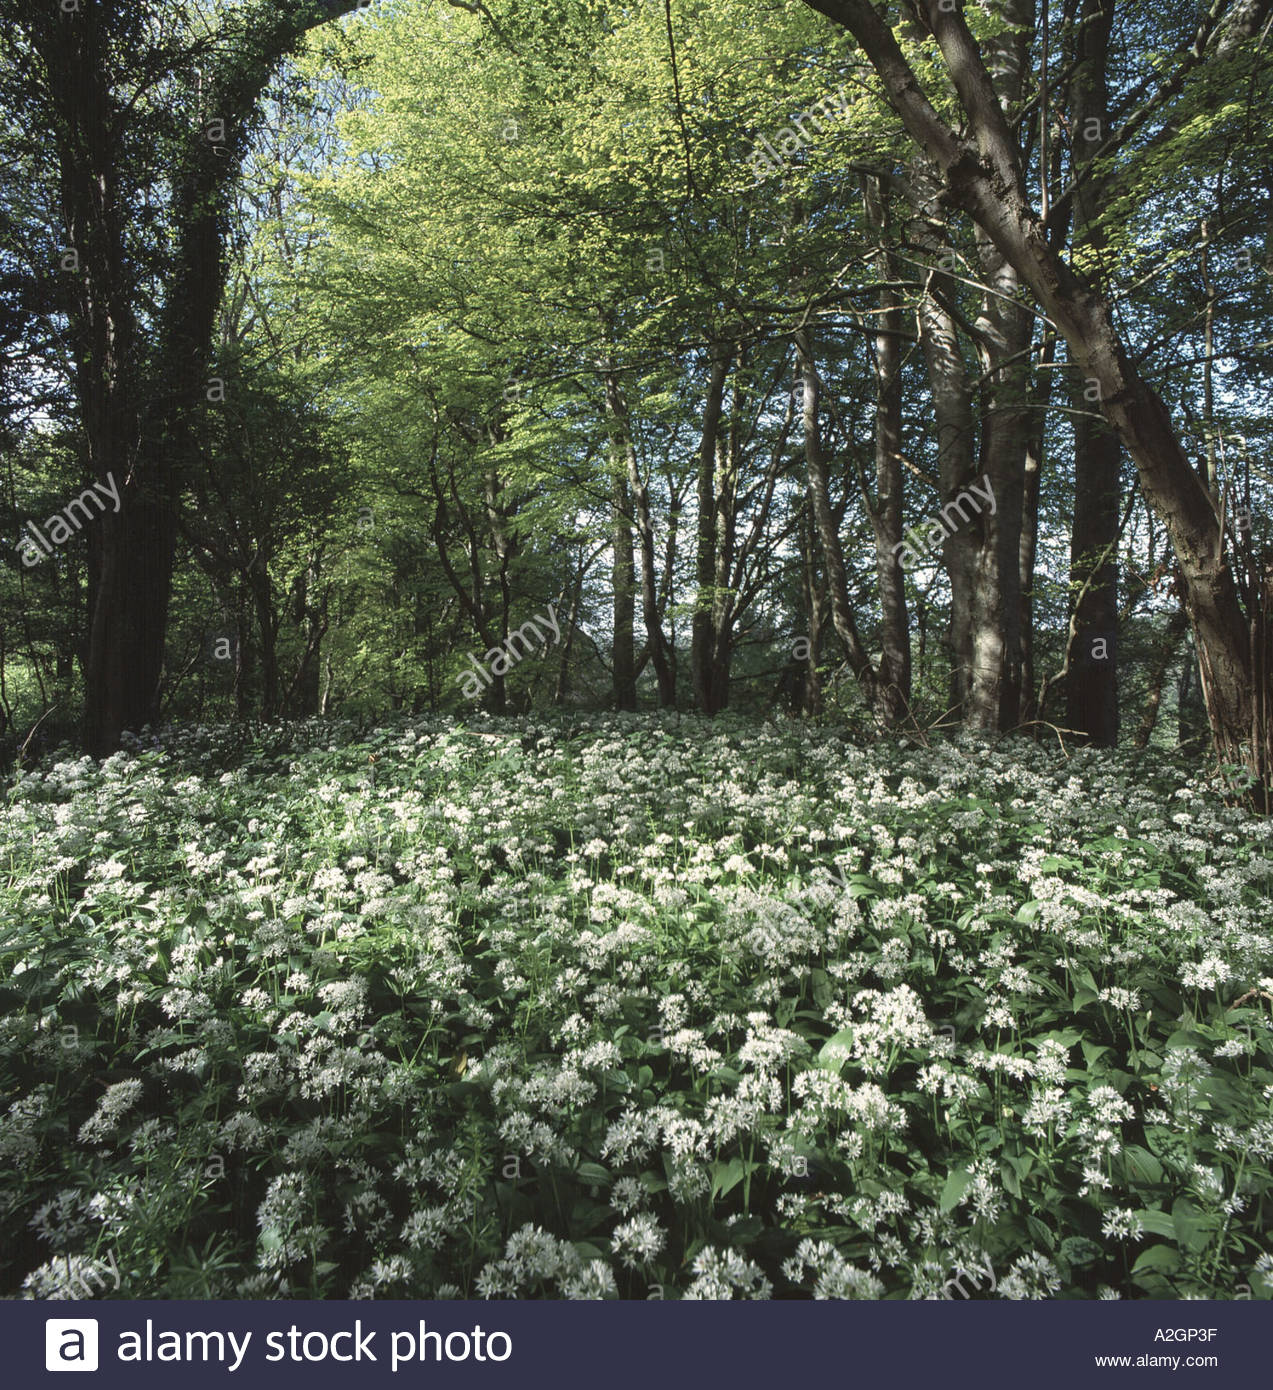 L'ail des ours ou Allium ursinum ramsons floraison dans les hêtraies connu localement comme des sorcières de bois, près de Devon Branscombe Banque D'Images